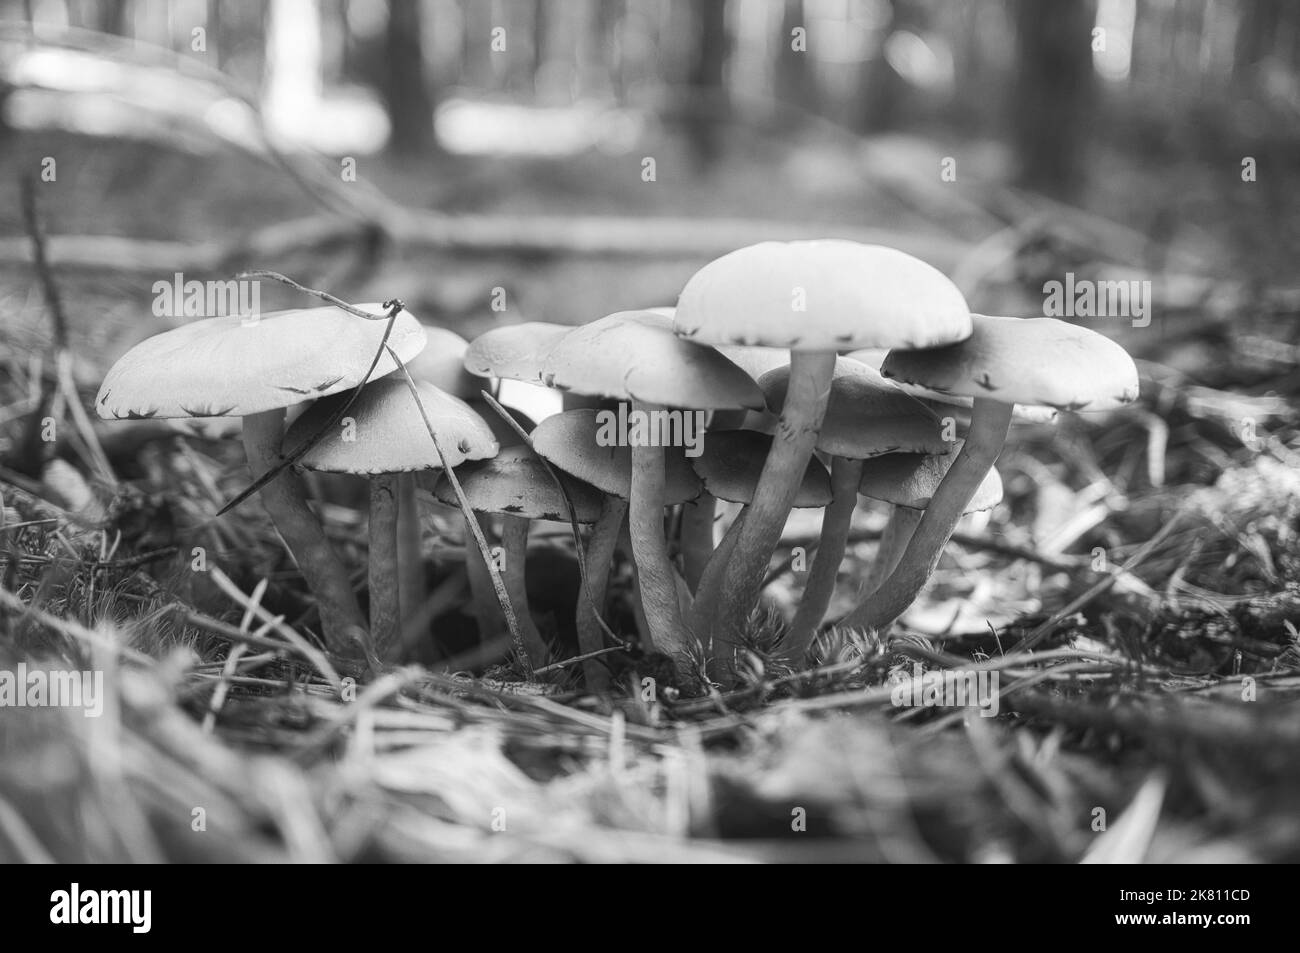 Un gruppo di funghi, presi in bianco e nero, nel bosco sul pavimento del bosco. Muschio, aghi di pino sulla terra. Autunno giorno alla ricerca di funghi. Foto Stock